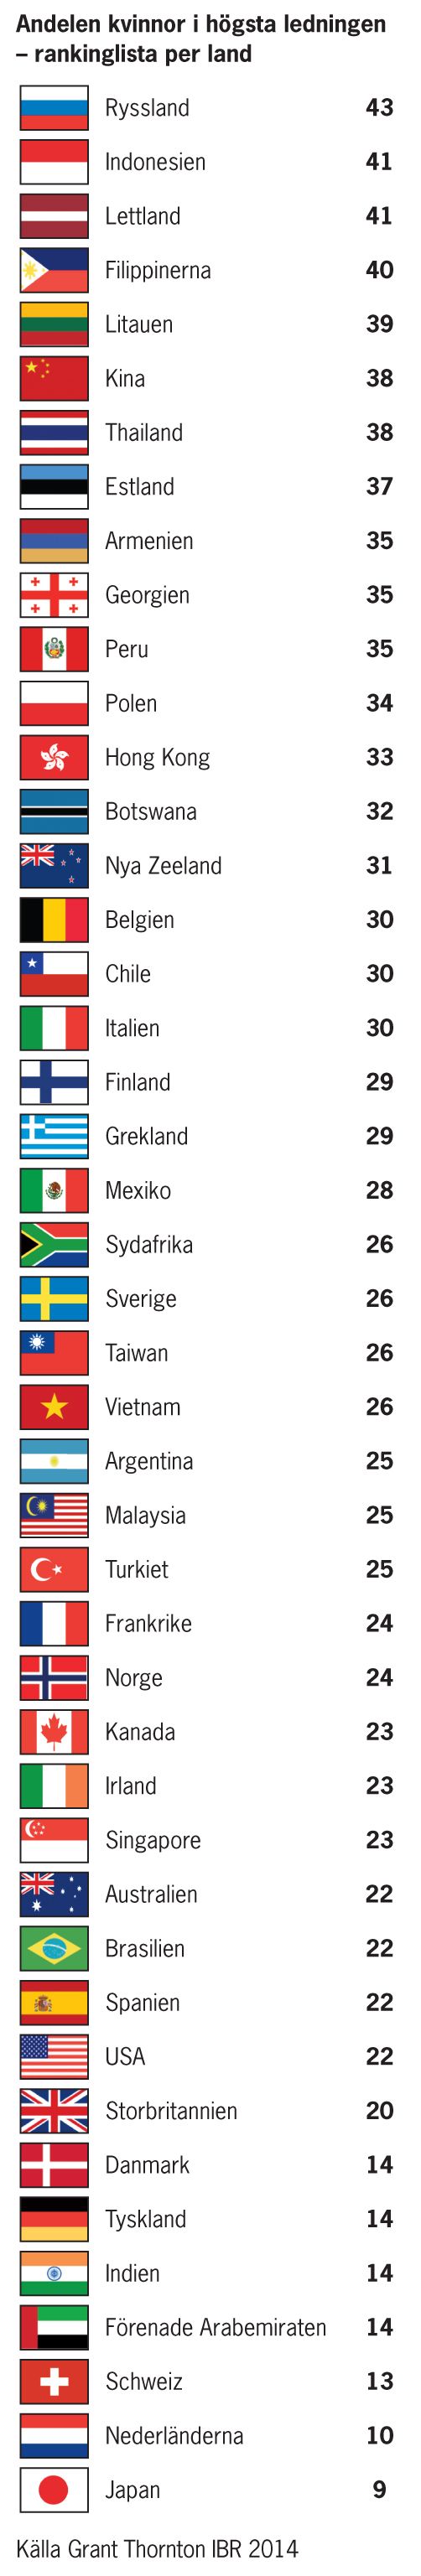 Rankingtabell över länder med högst/lägst andel kvinnor i högsta ledningen